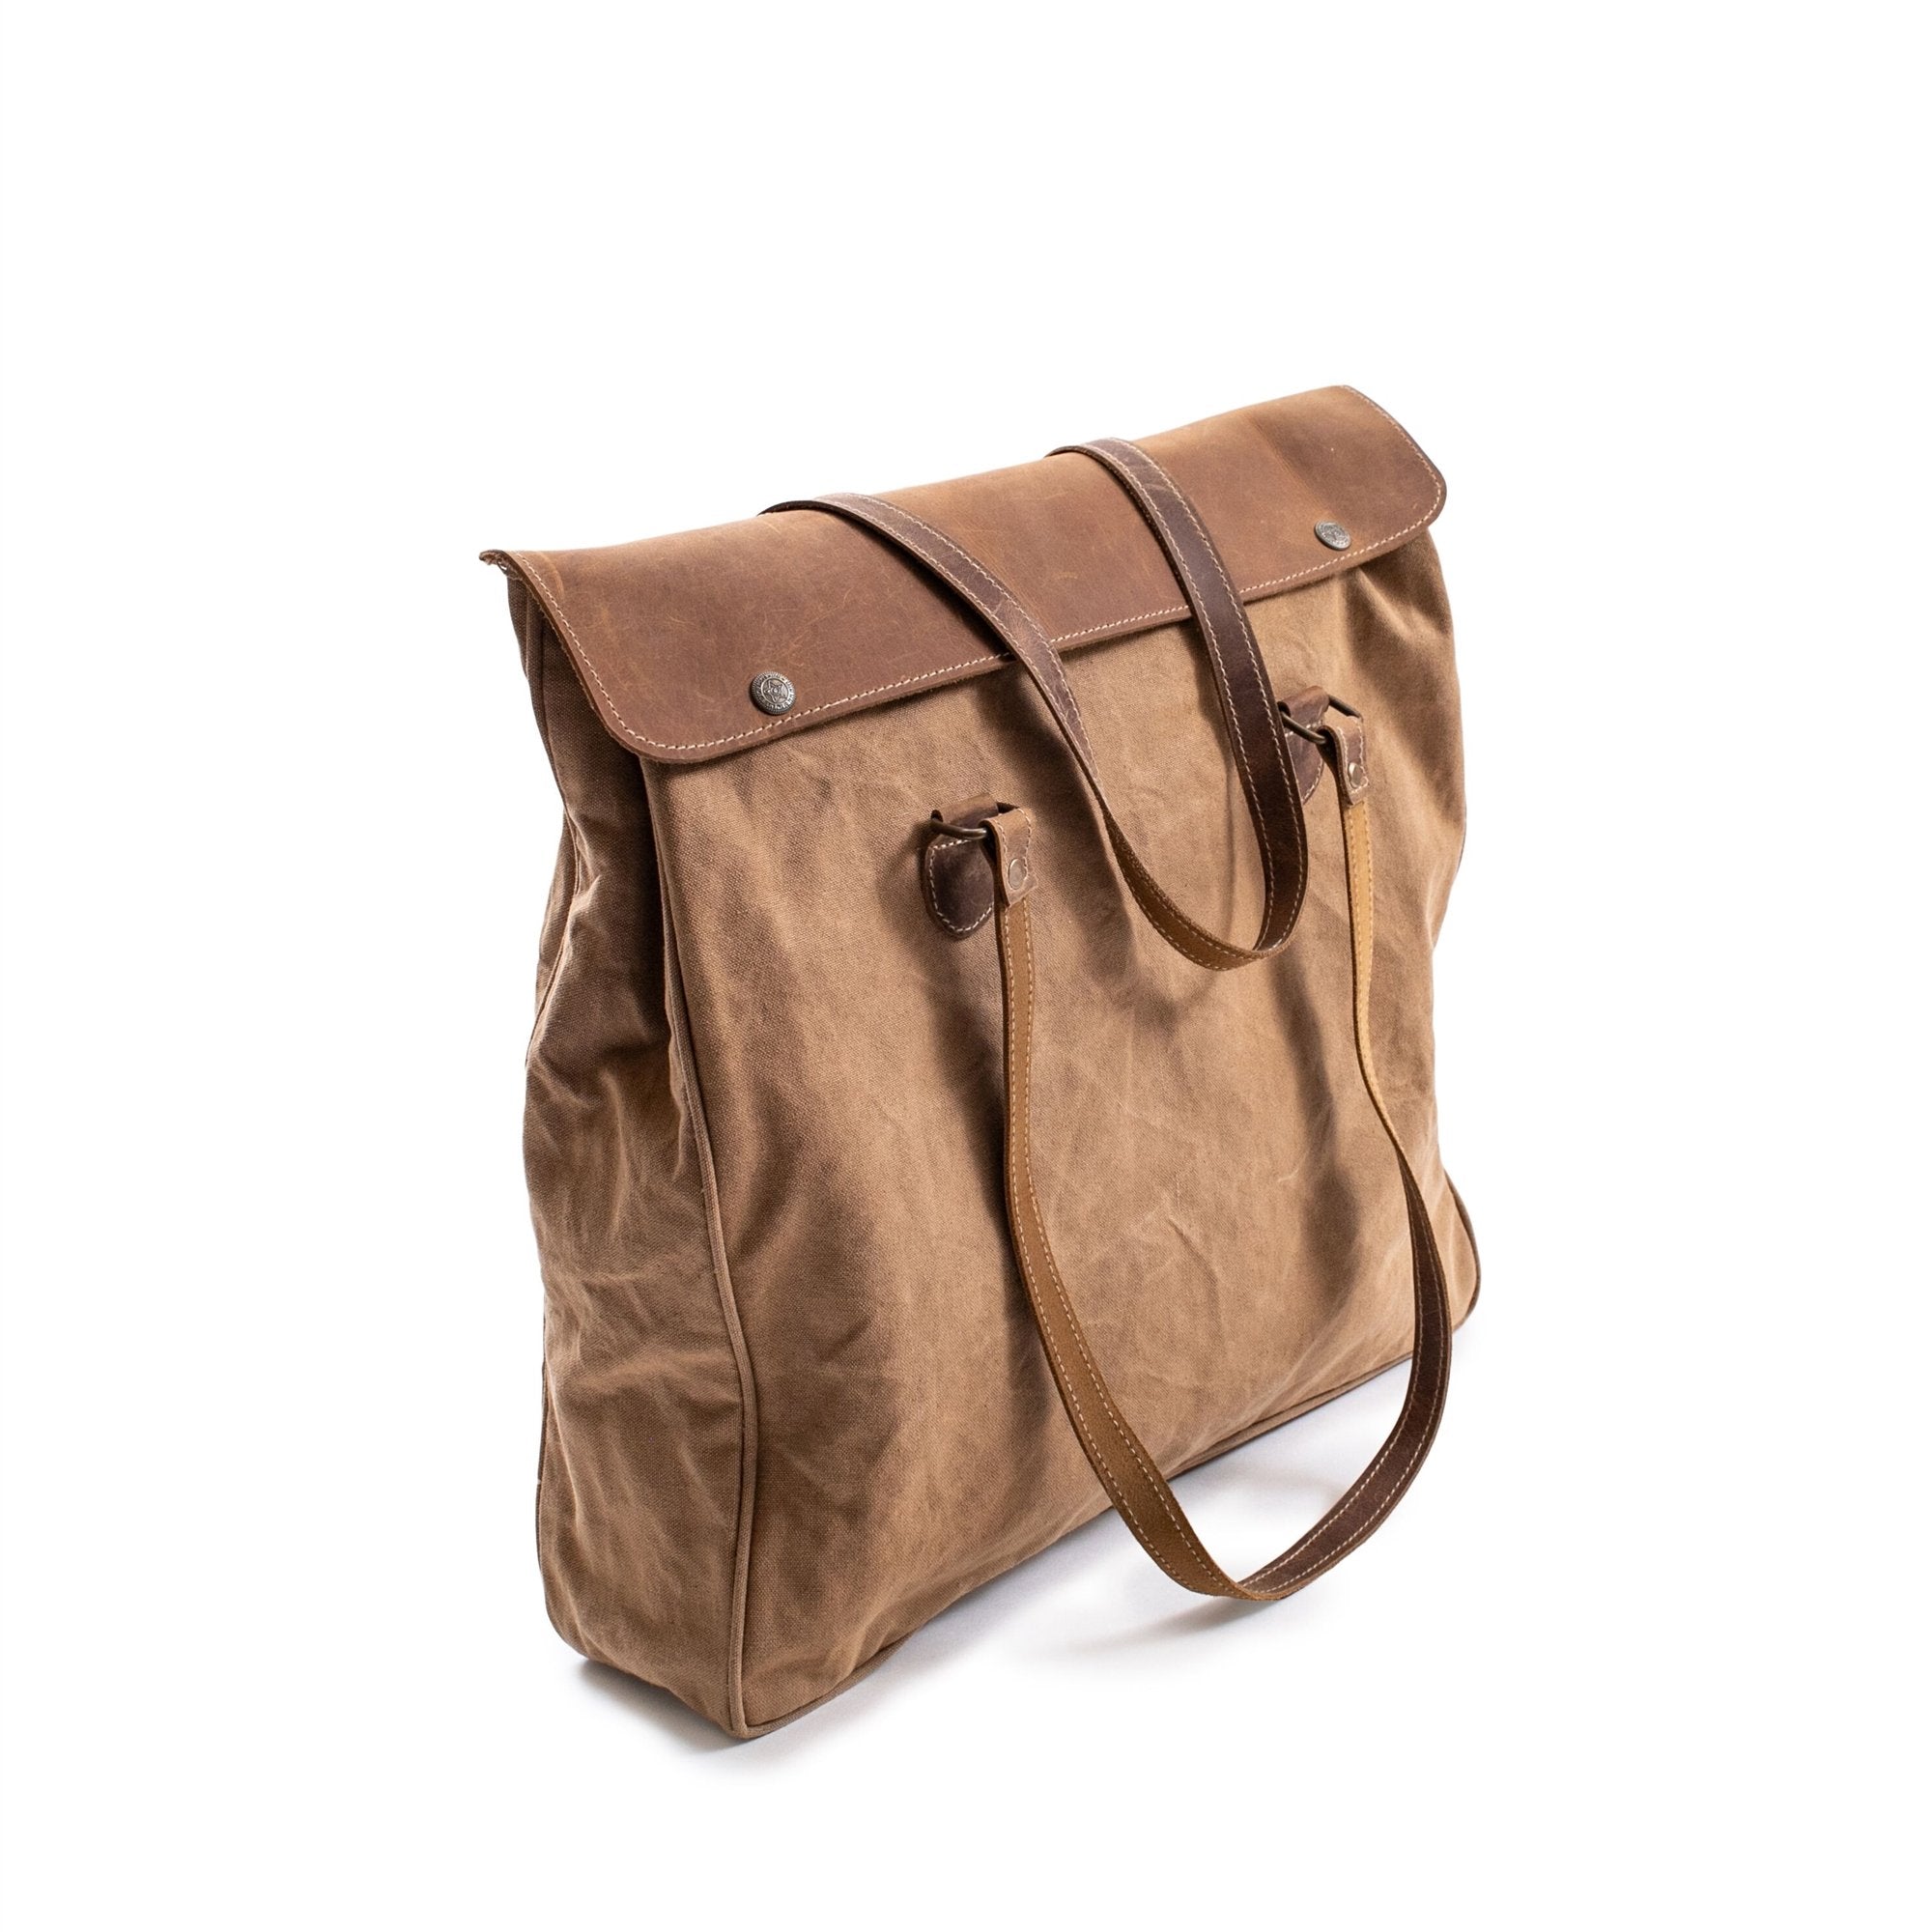 CANVAS SHOULDER BAG WITH LEATHER STRAPS - BEIGE - 16"X15"-Shoulder Bag-Jack and Jill Boutique